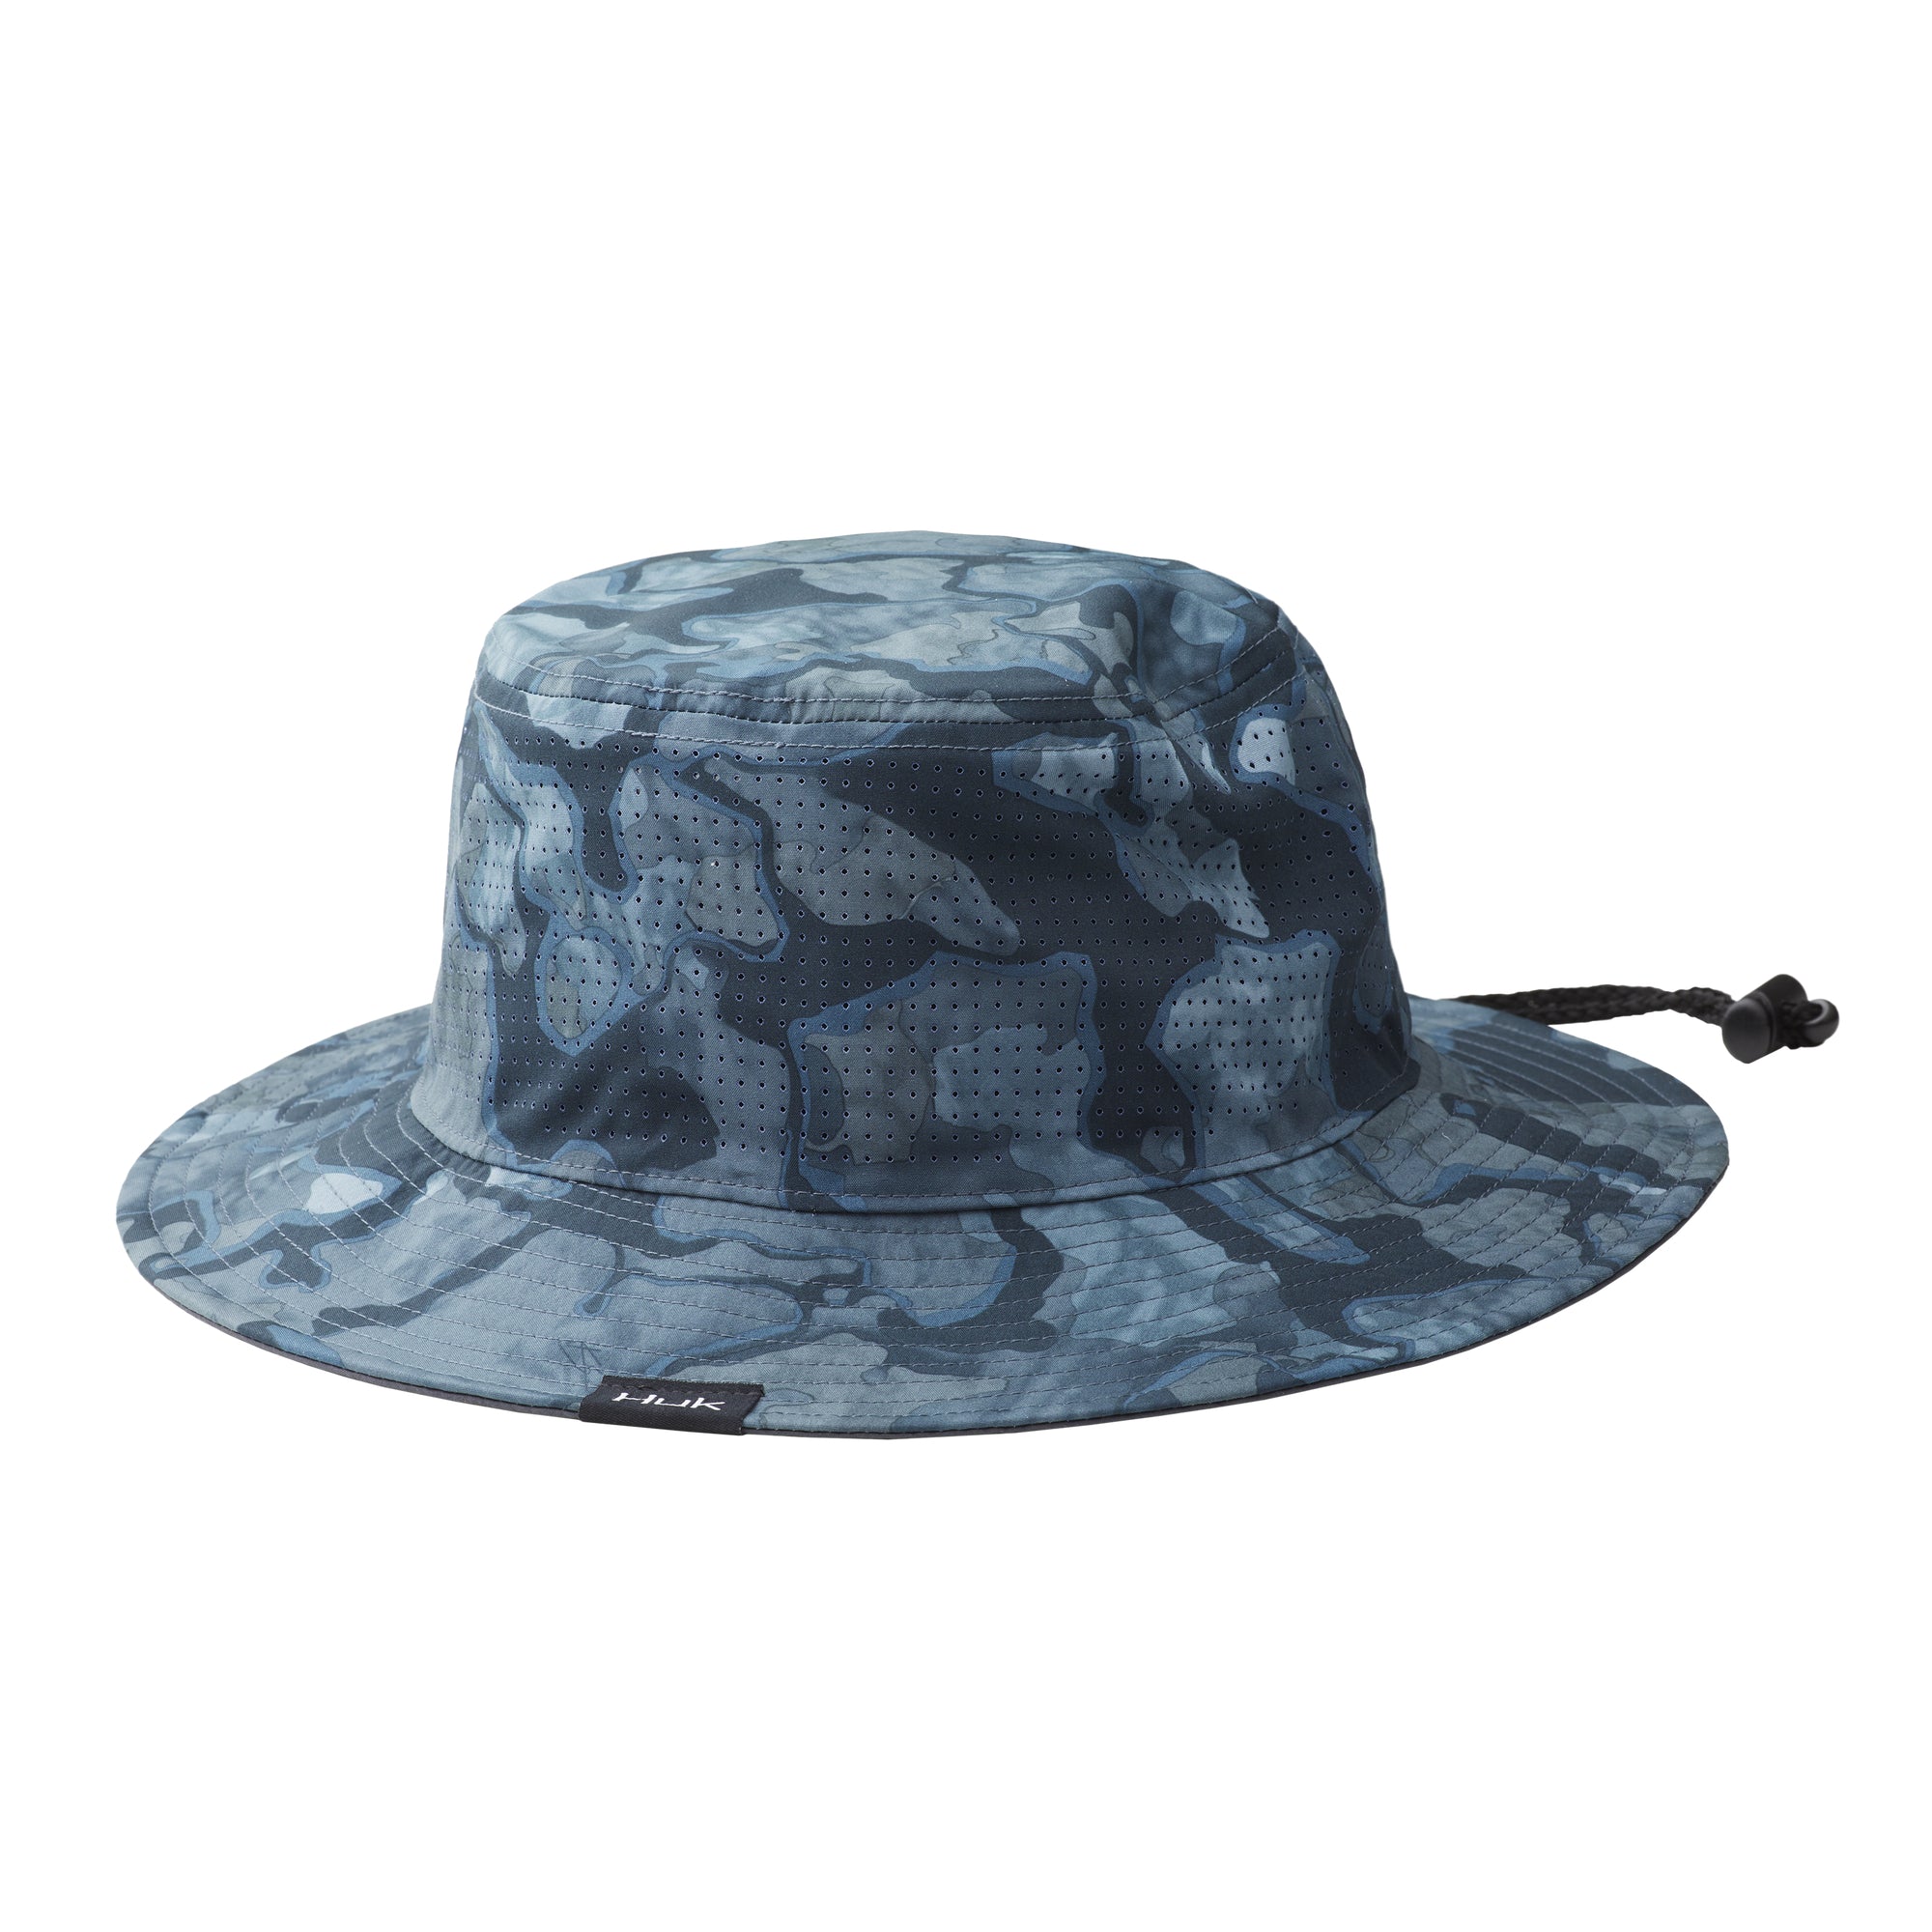 Huk Current Camo Bucket Hat